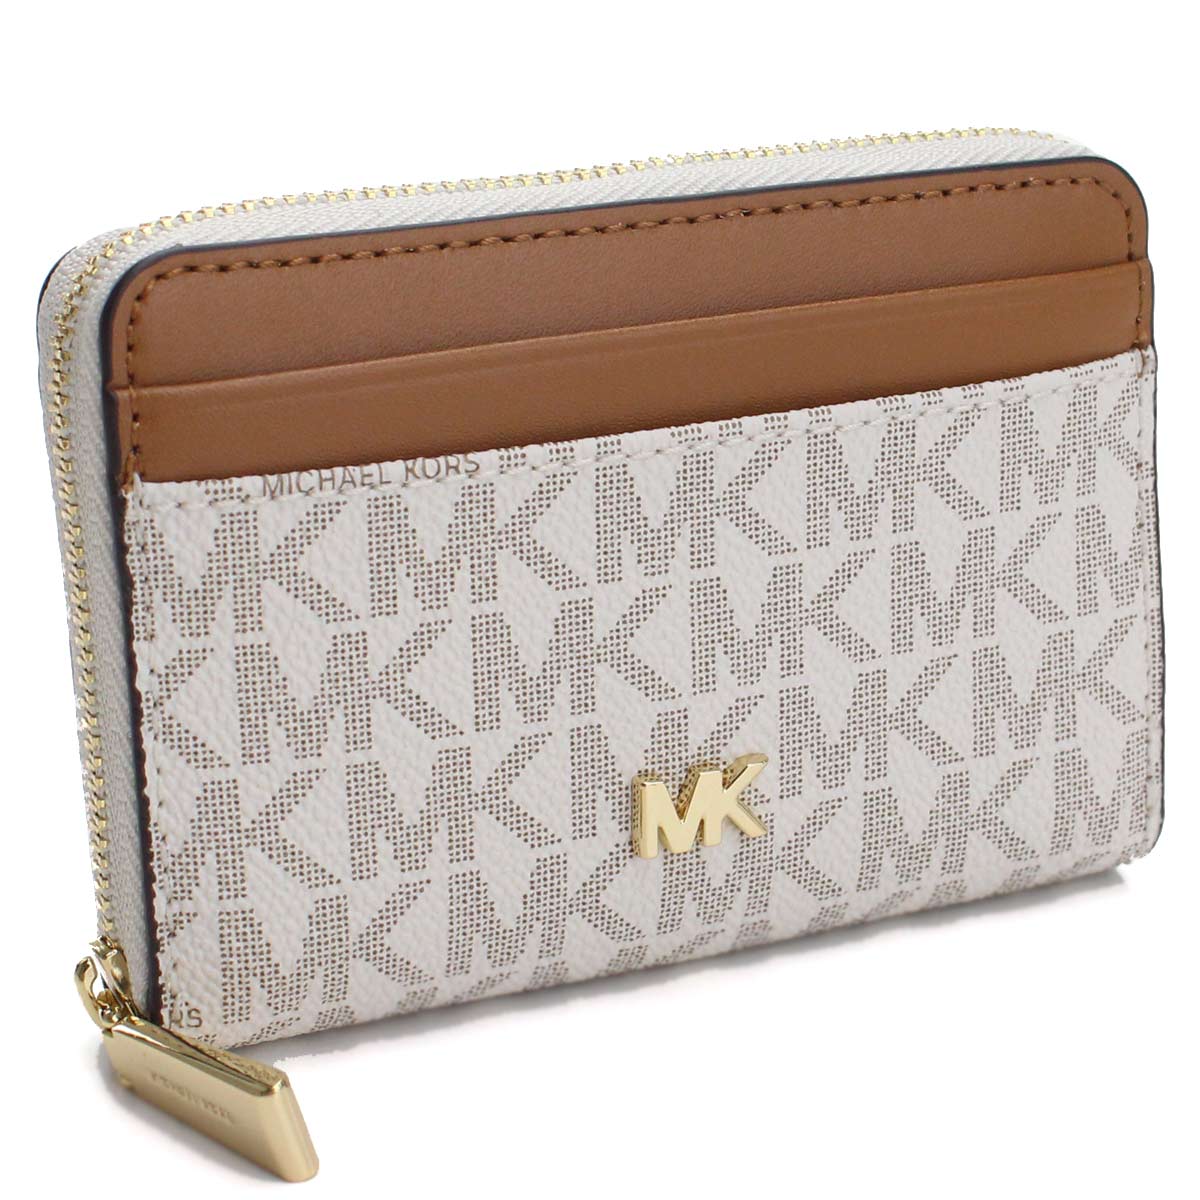 MK wallet white